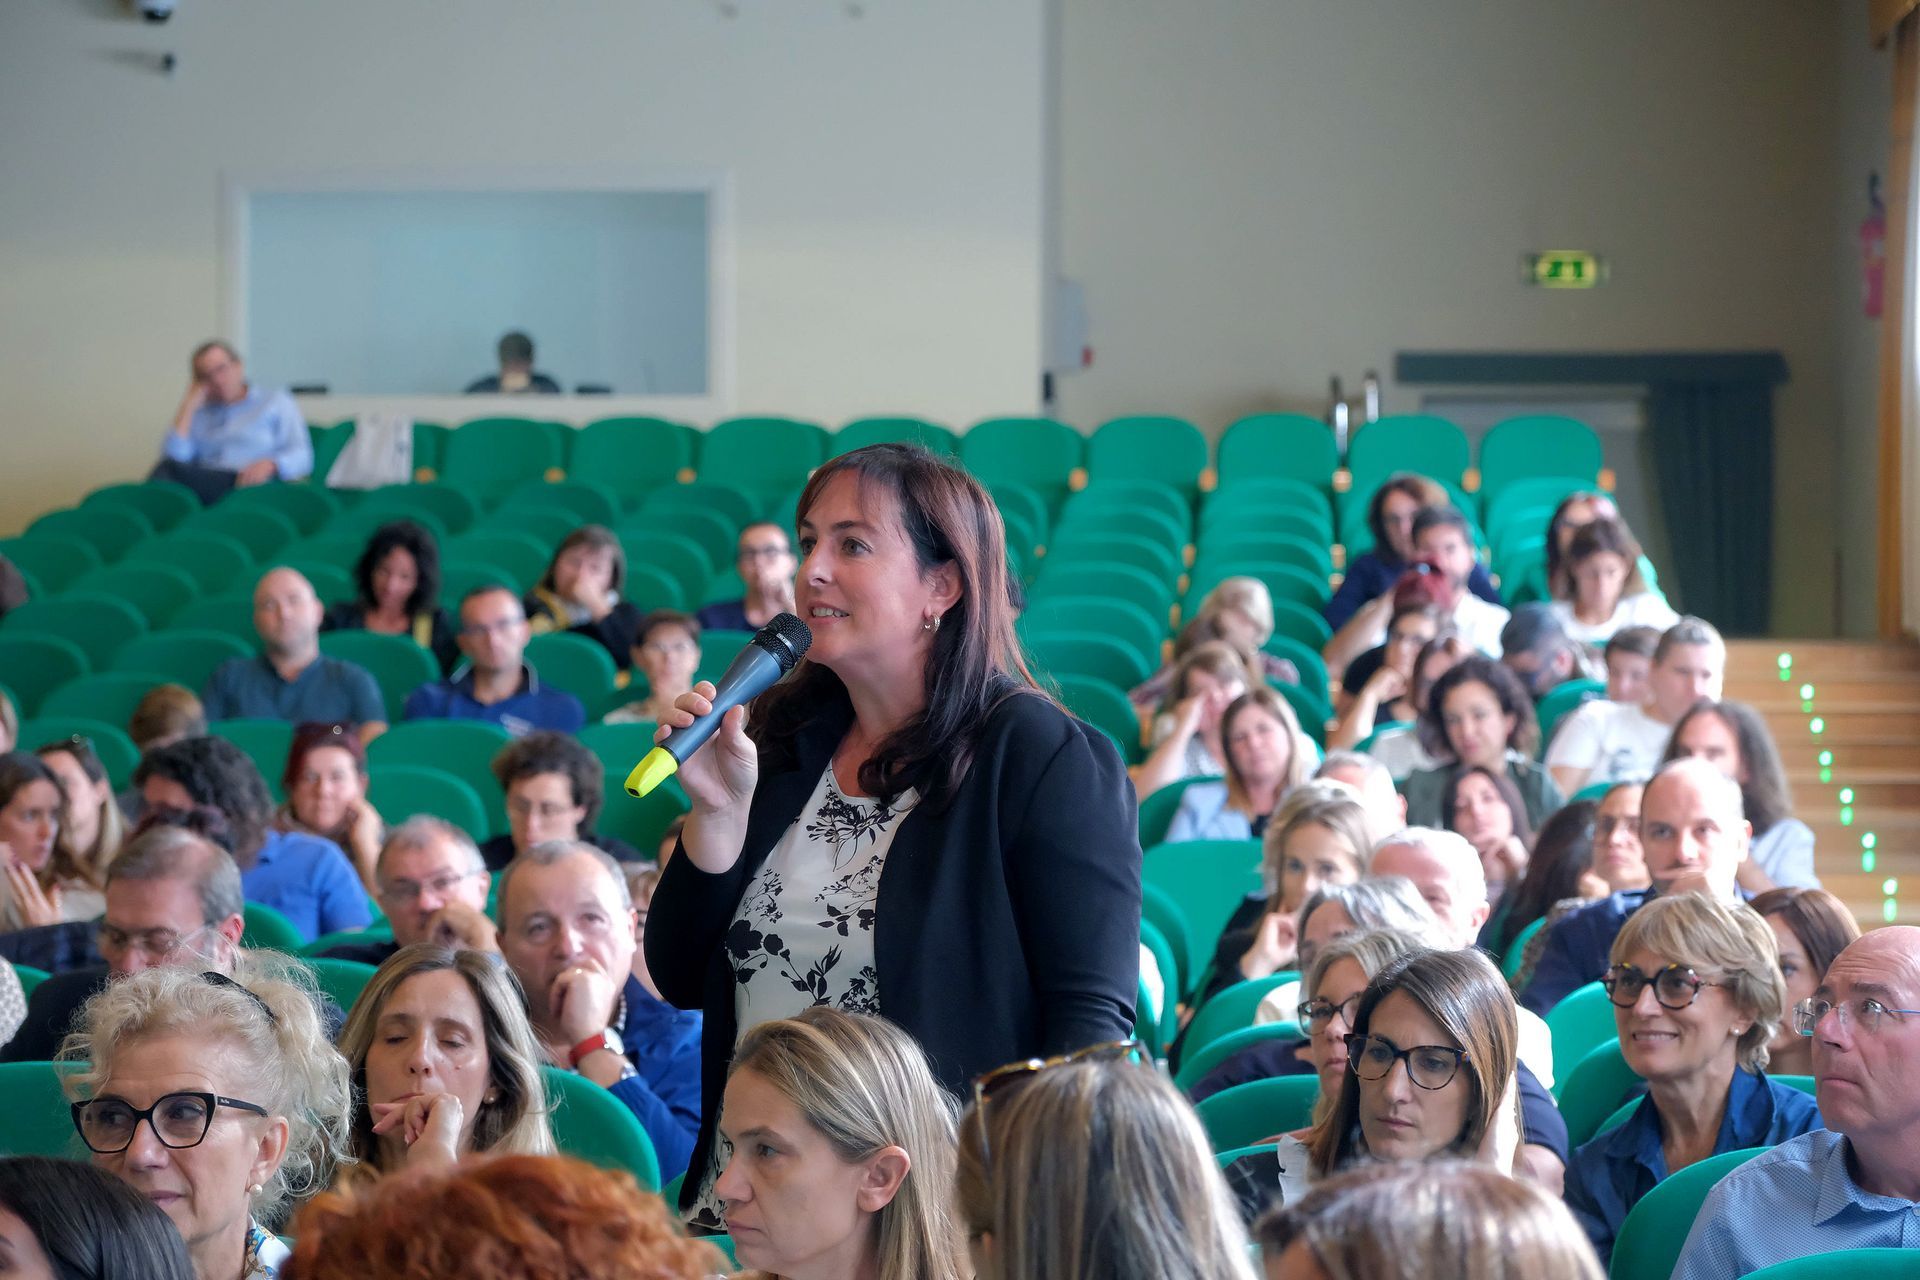 Una donna tiene in mano un microfono davanti a una folla di persone in un auditorium.